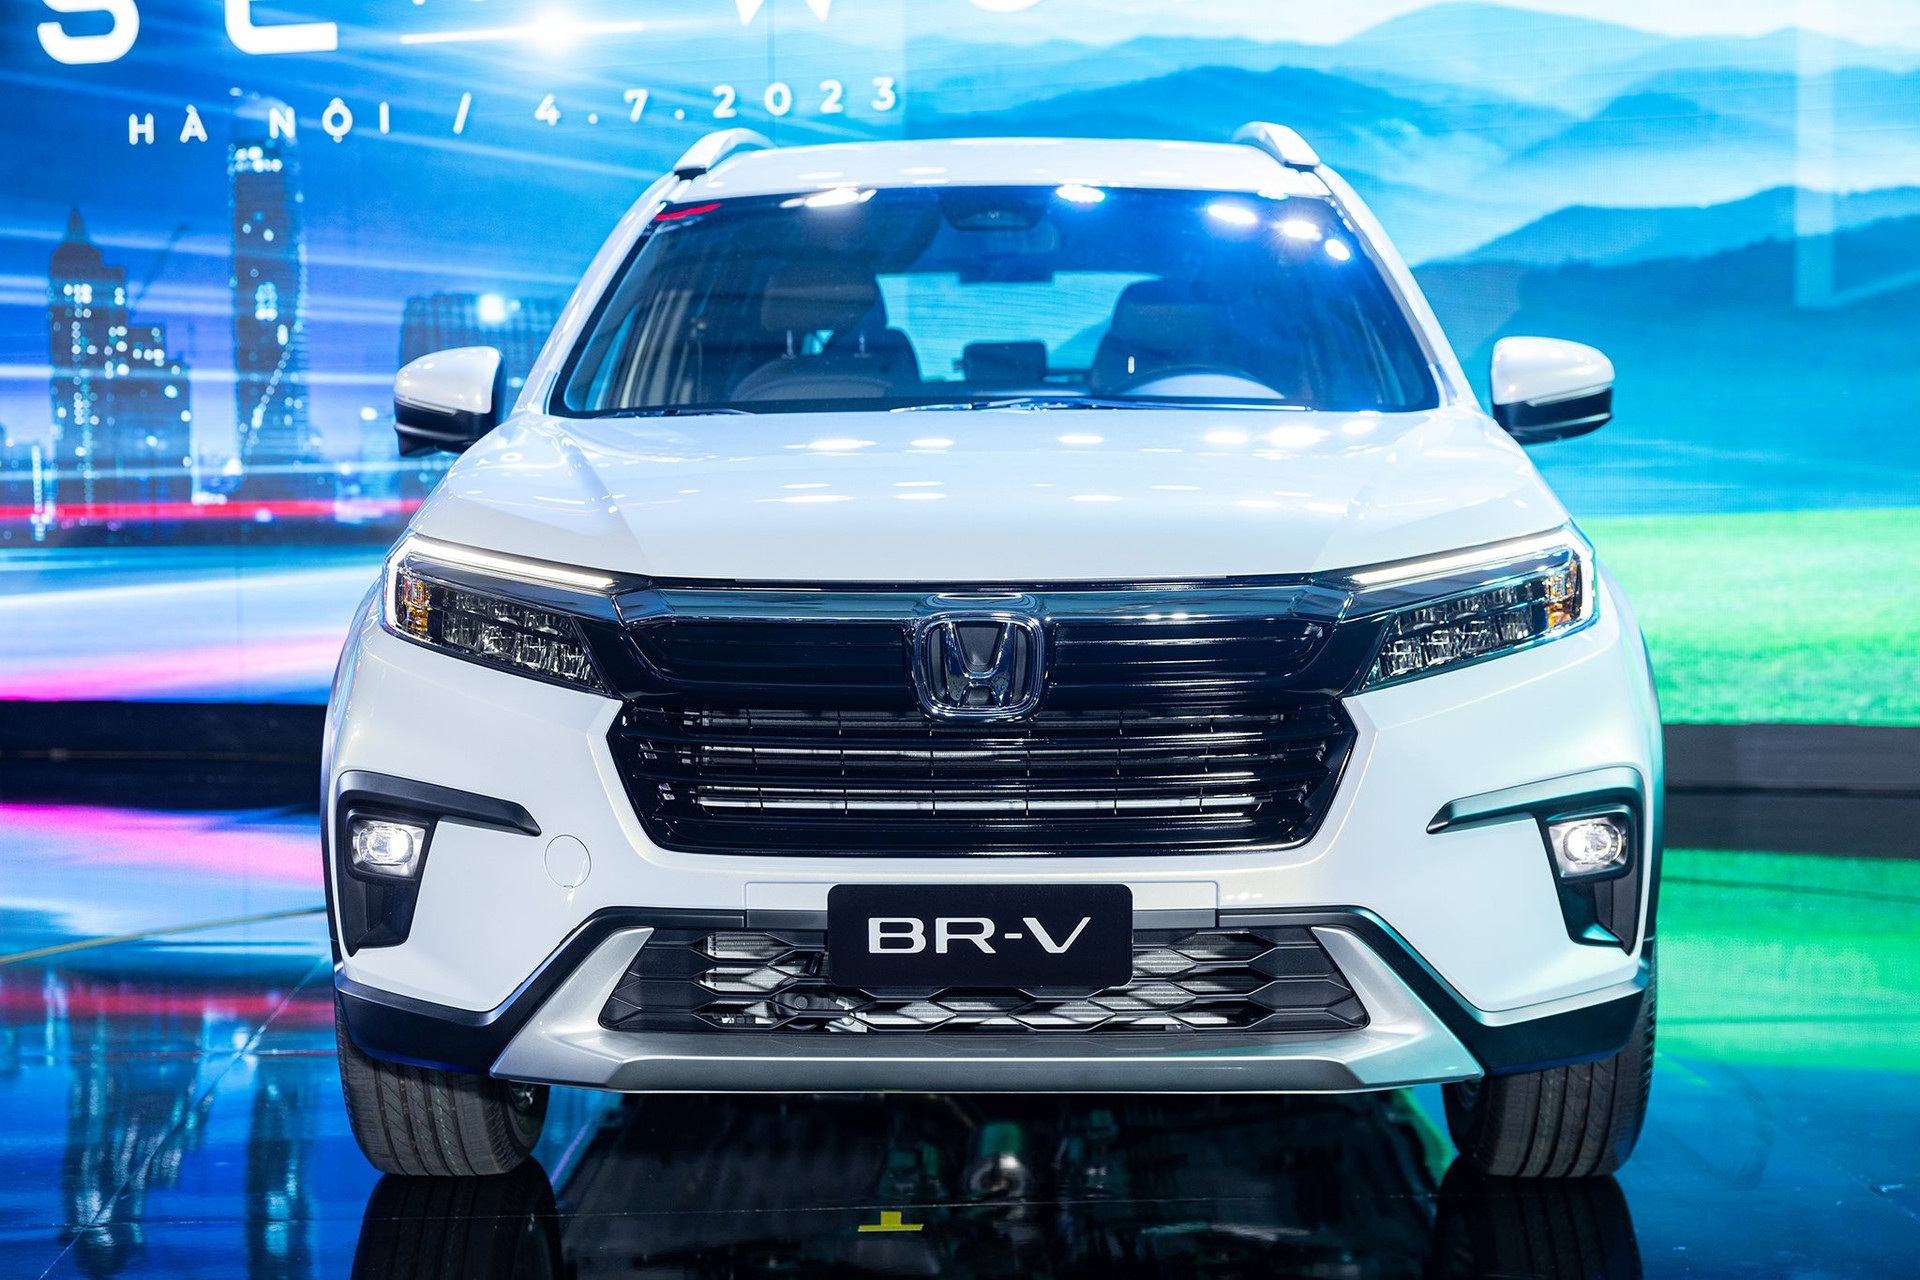 Đánh giá nhanh xe Honda BRV 2020 với thiết kế rẻ đẹp và an toàn